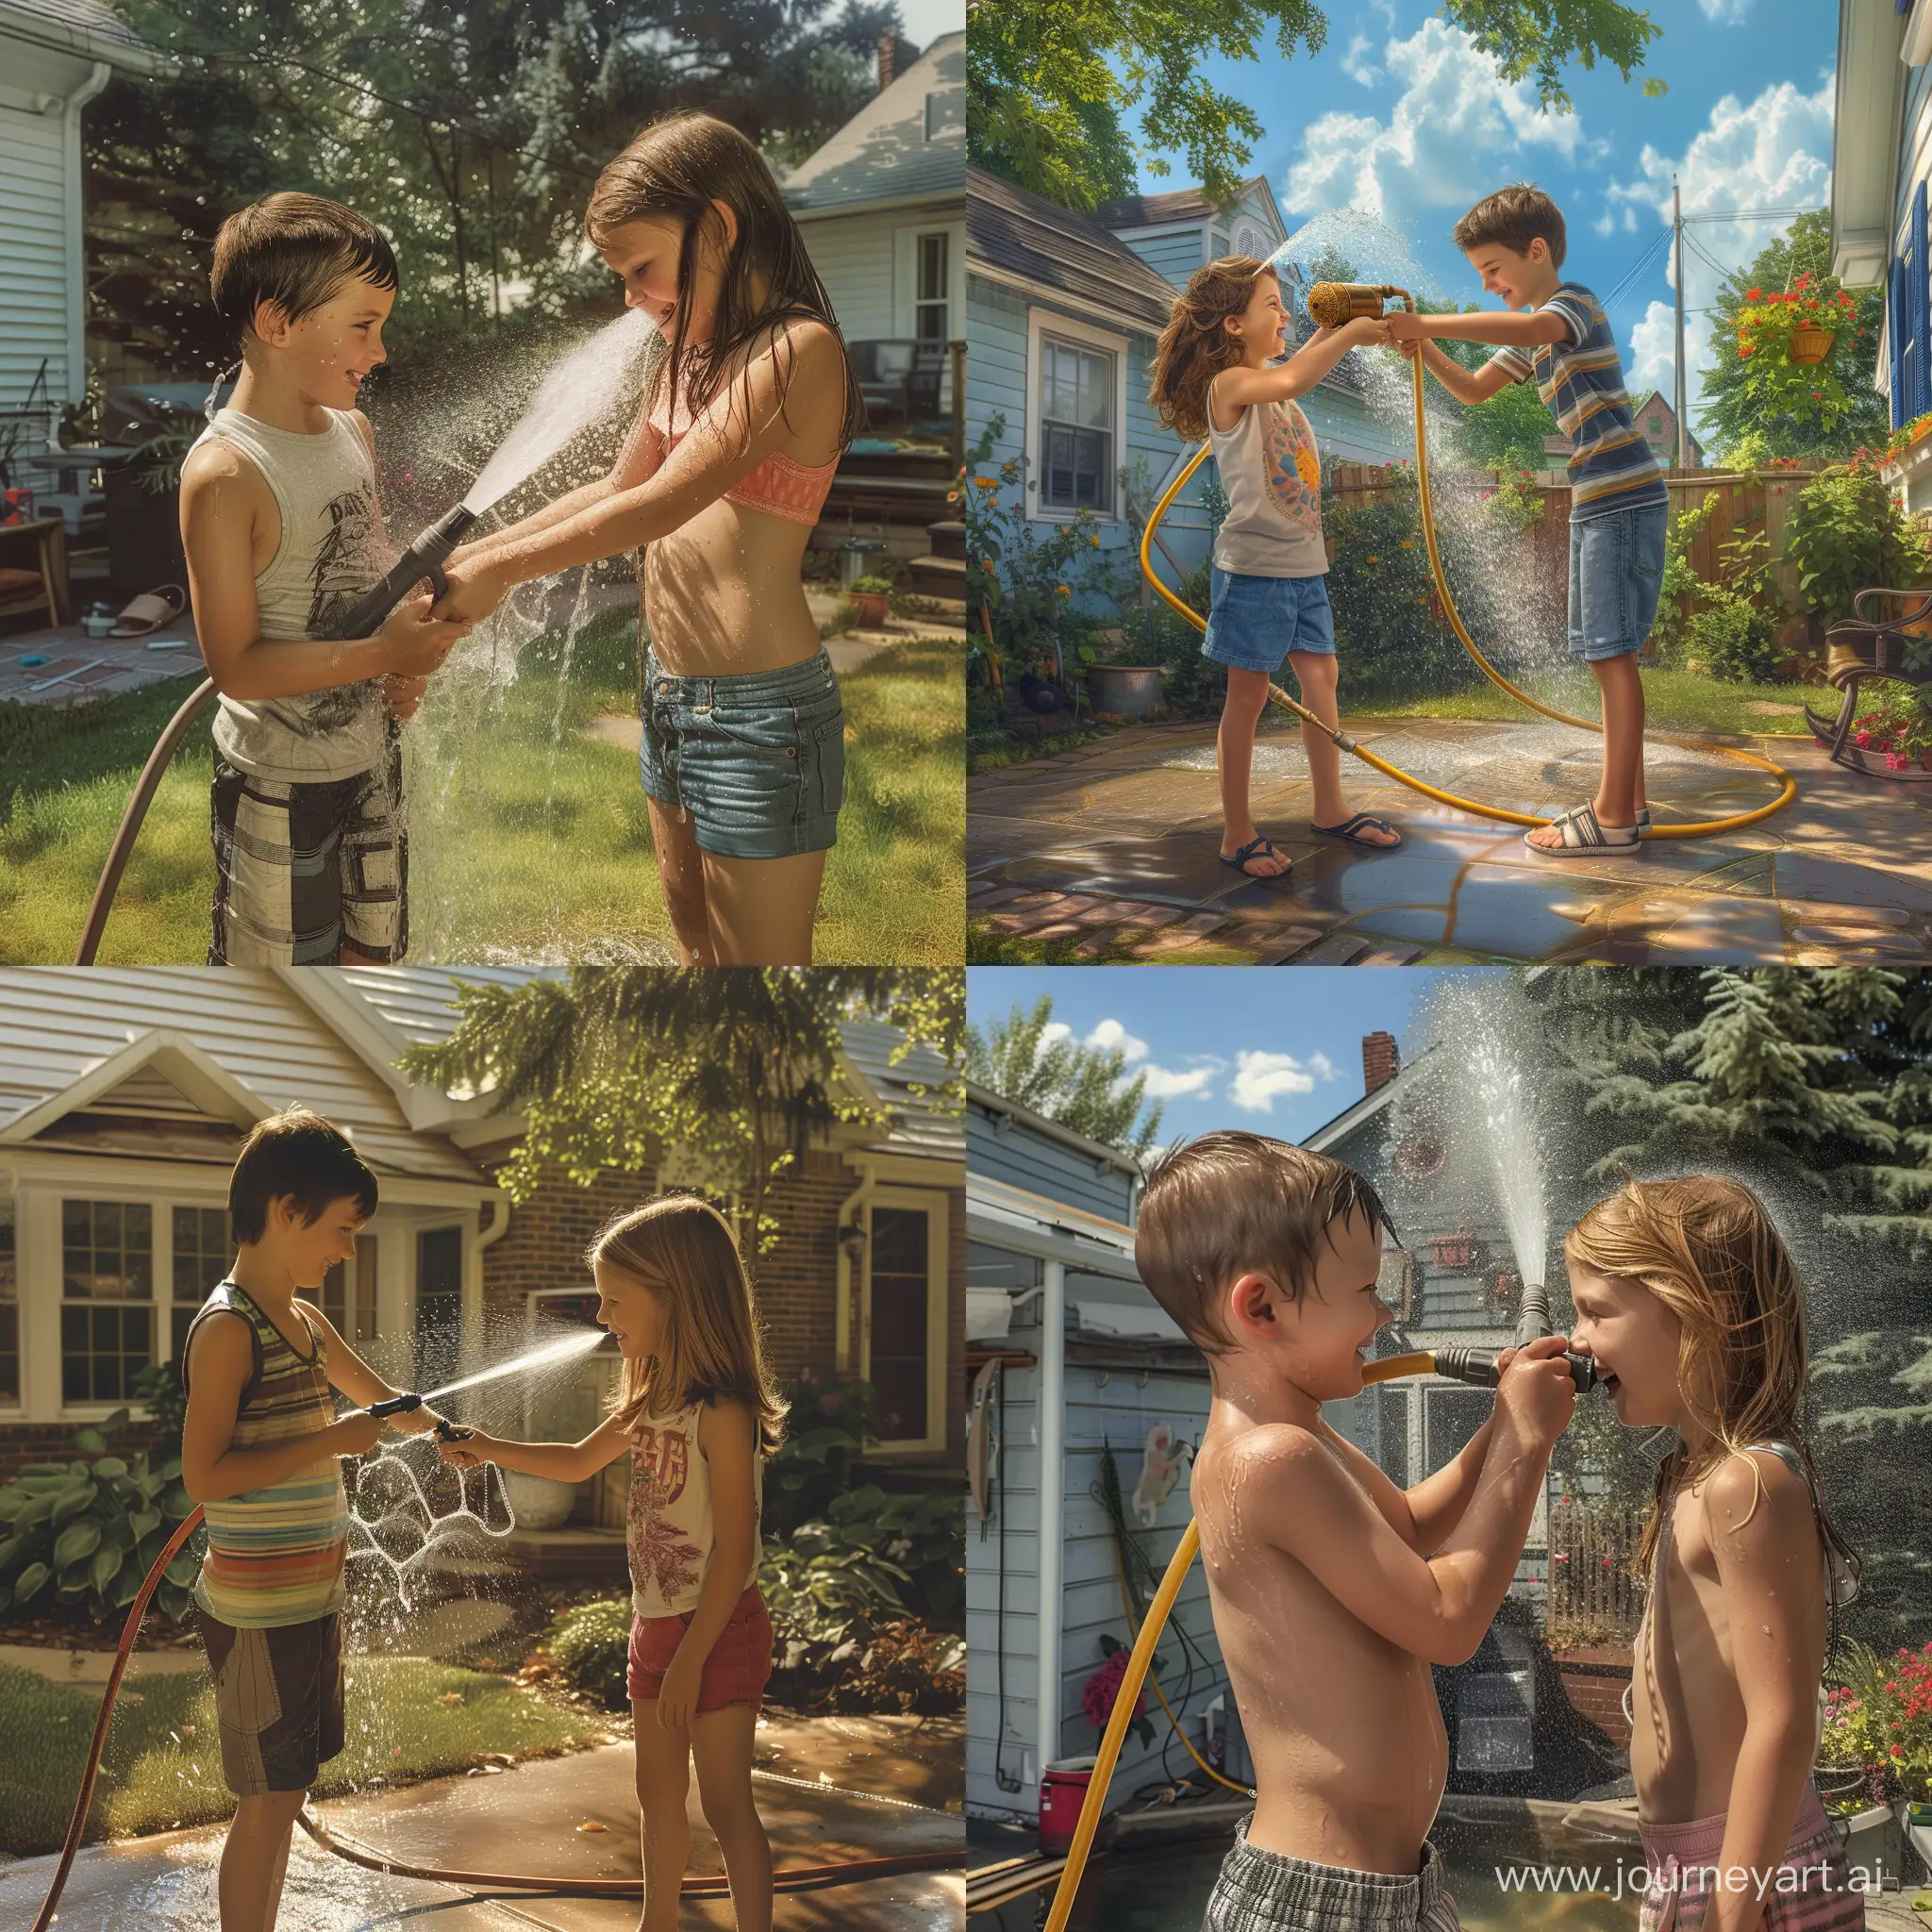 Мальчик и девочка поливают друг друга водой из садового шланга во дворе дома, солнечный летний день, фотография, гиперреализм, высокое разрешение